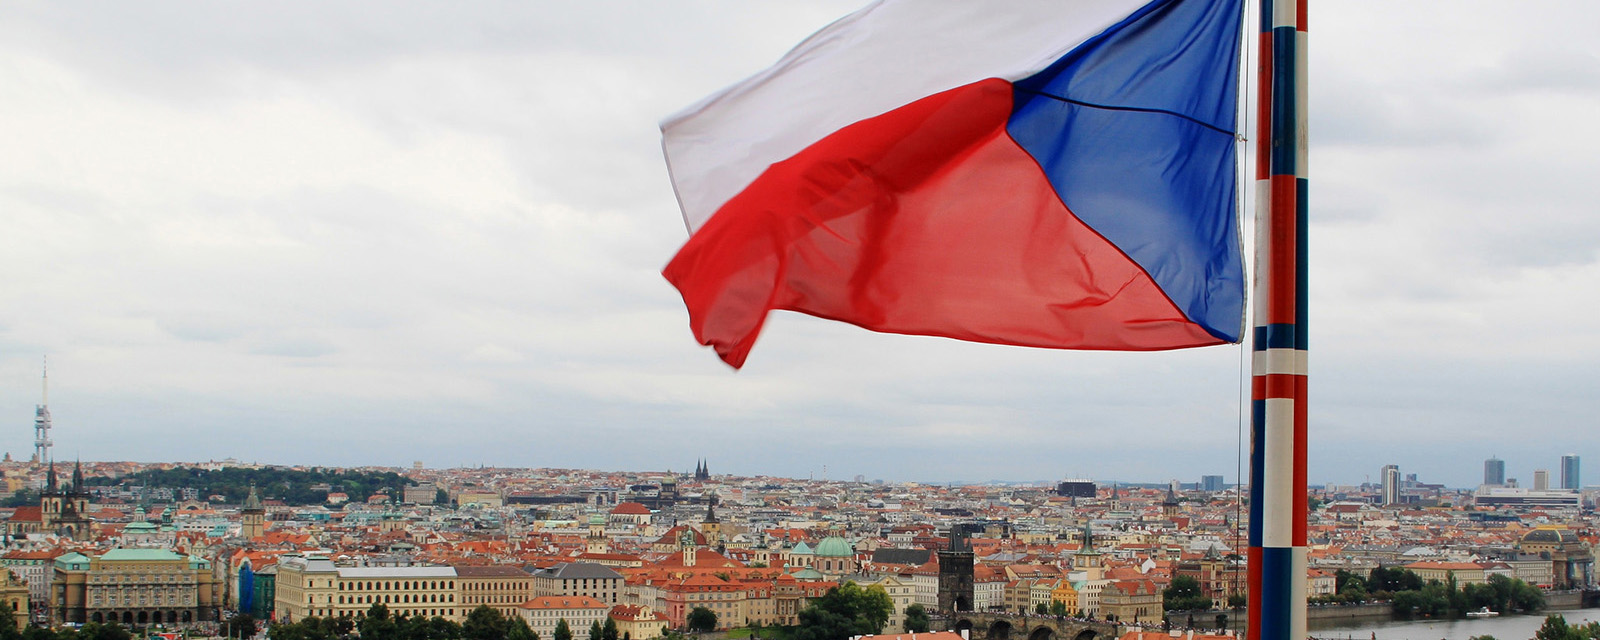 Профессор Келлер: Процветание Чехии основывалось на дешевой энергии и сырье из России